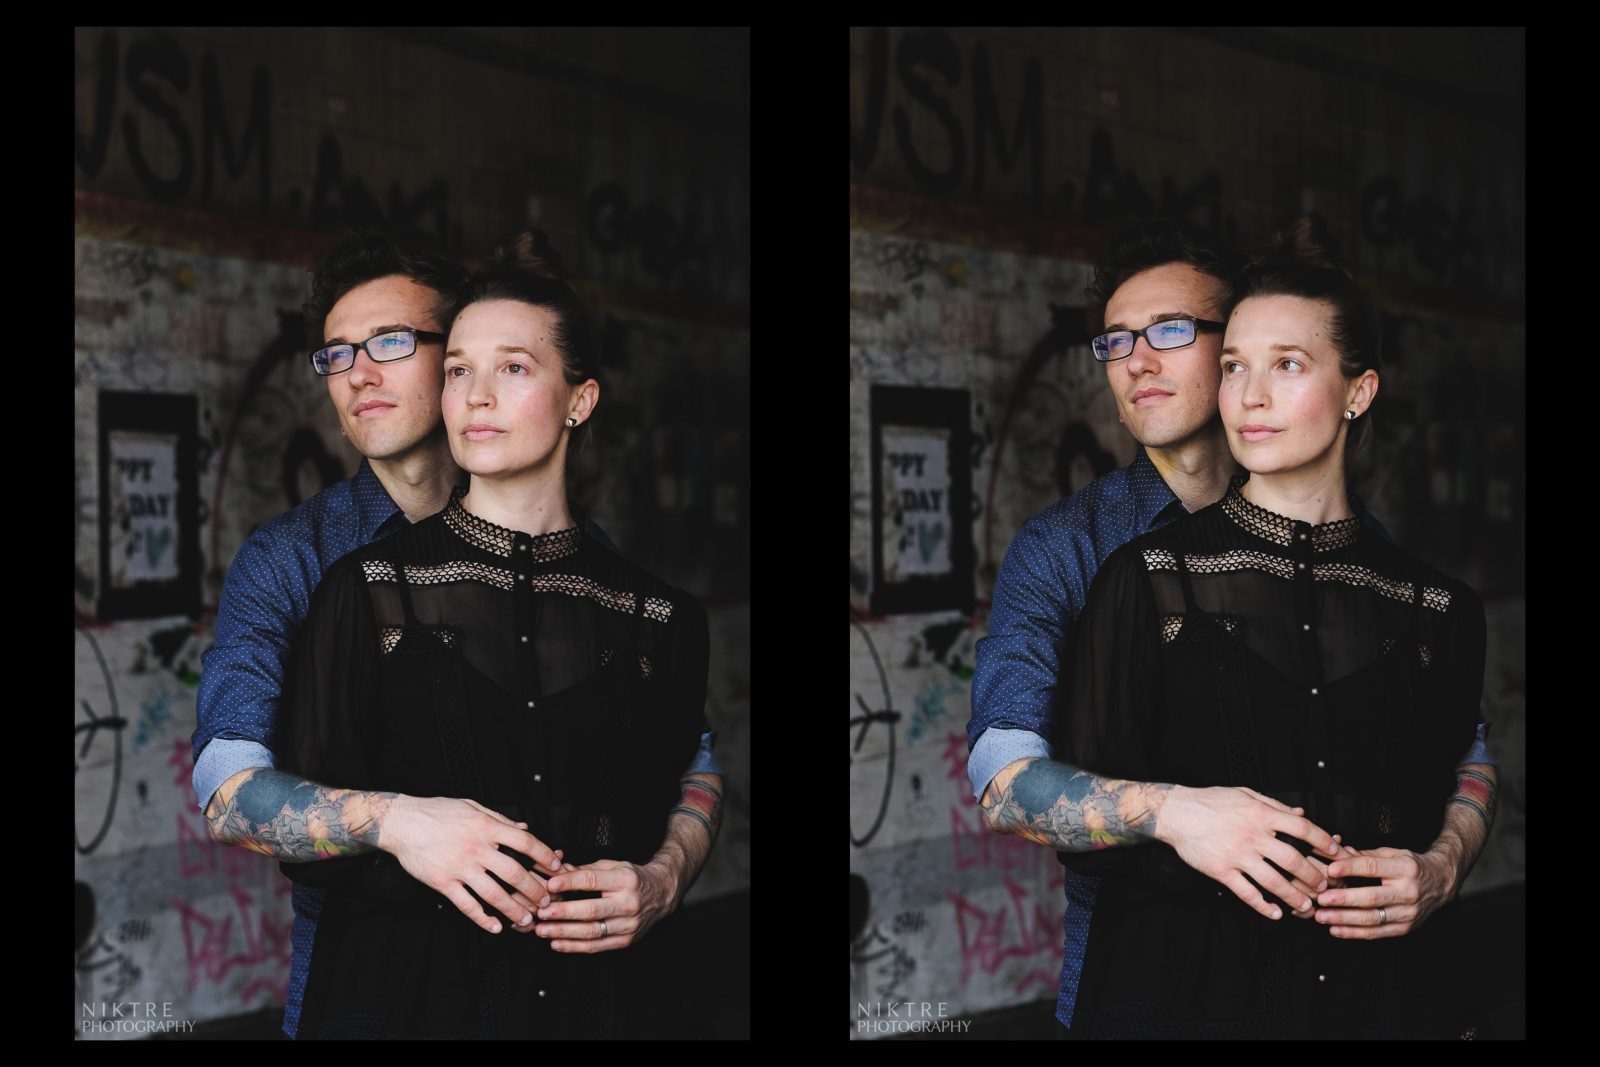 Mann mit Tattoos umarmt seine Frau beim Fotoshooting